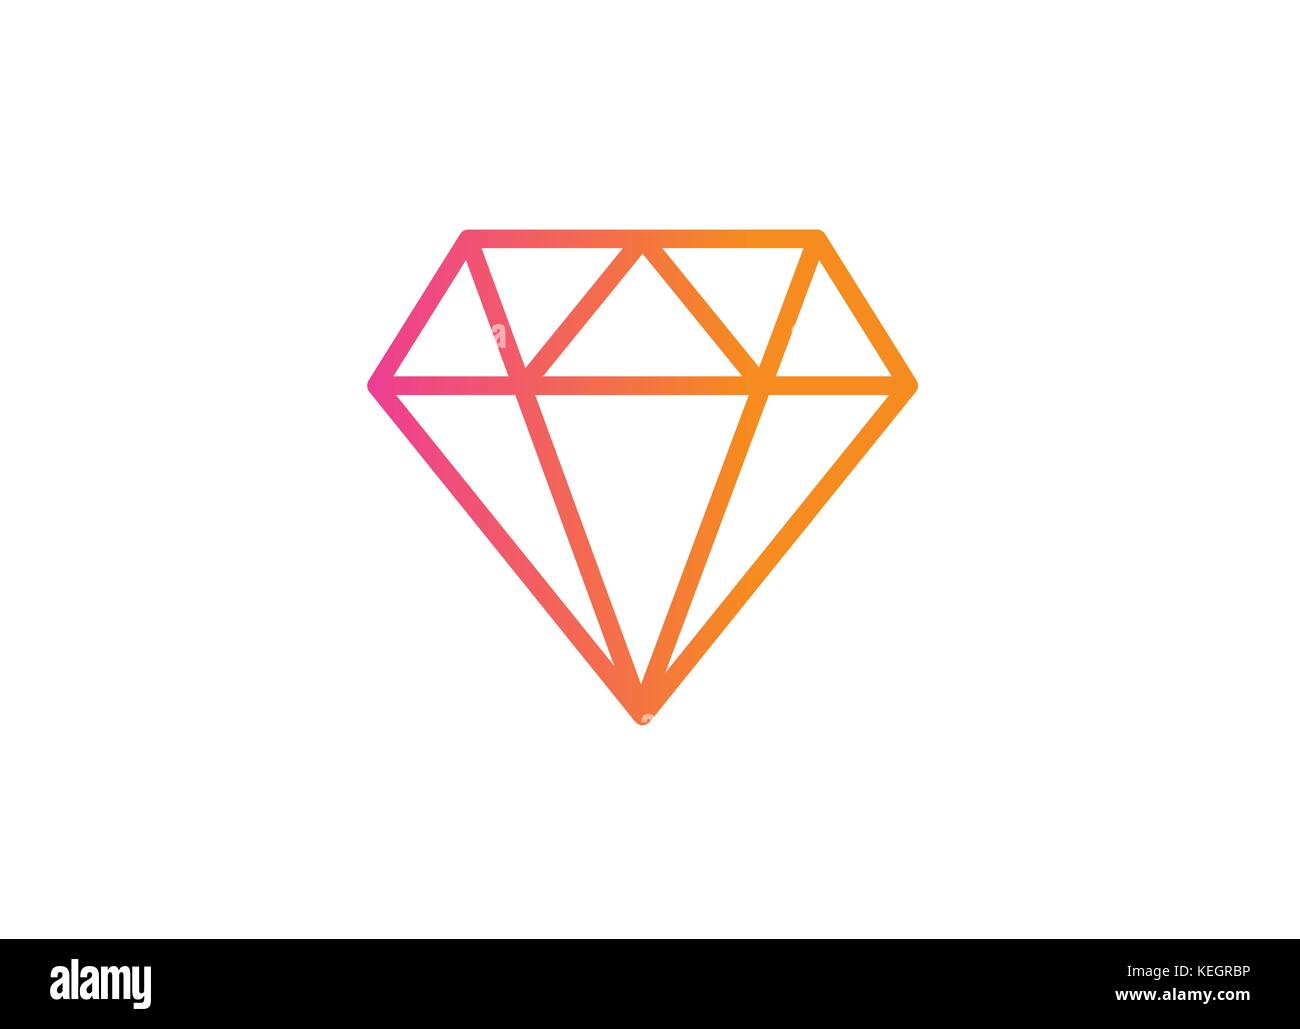 The vector gradient orange to pink flat diamond icon Stock Vector